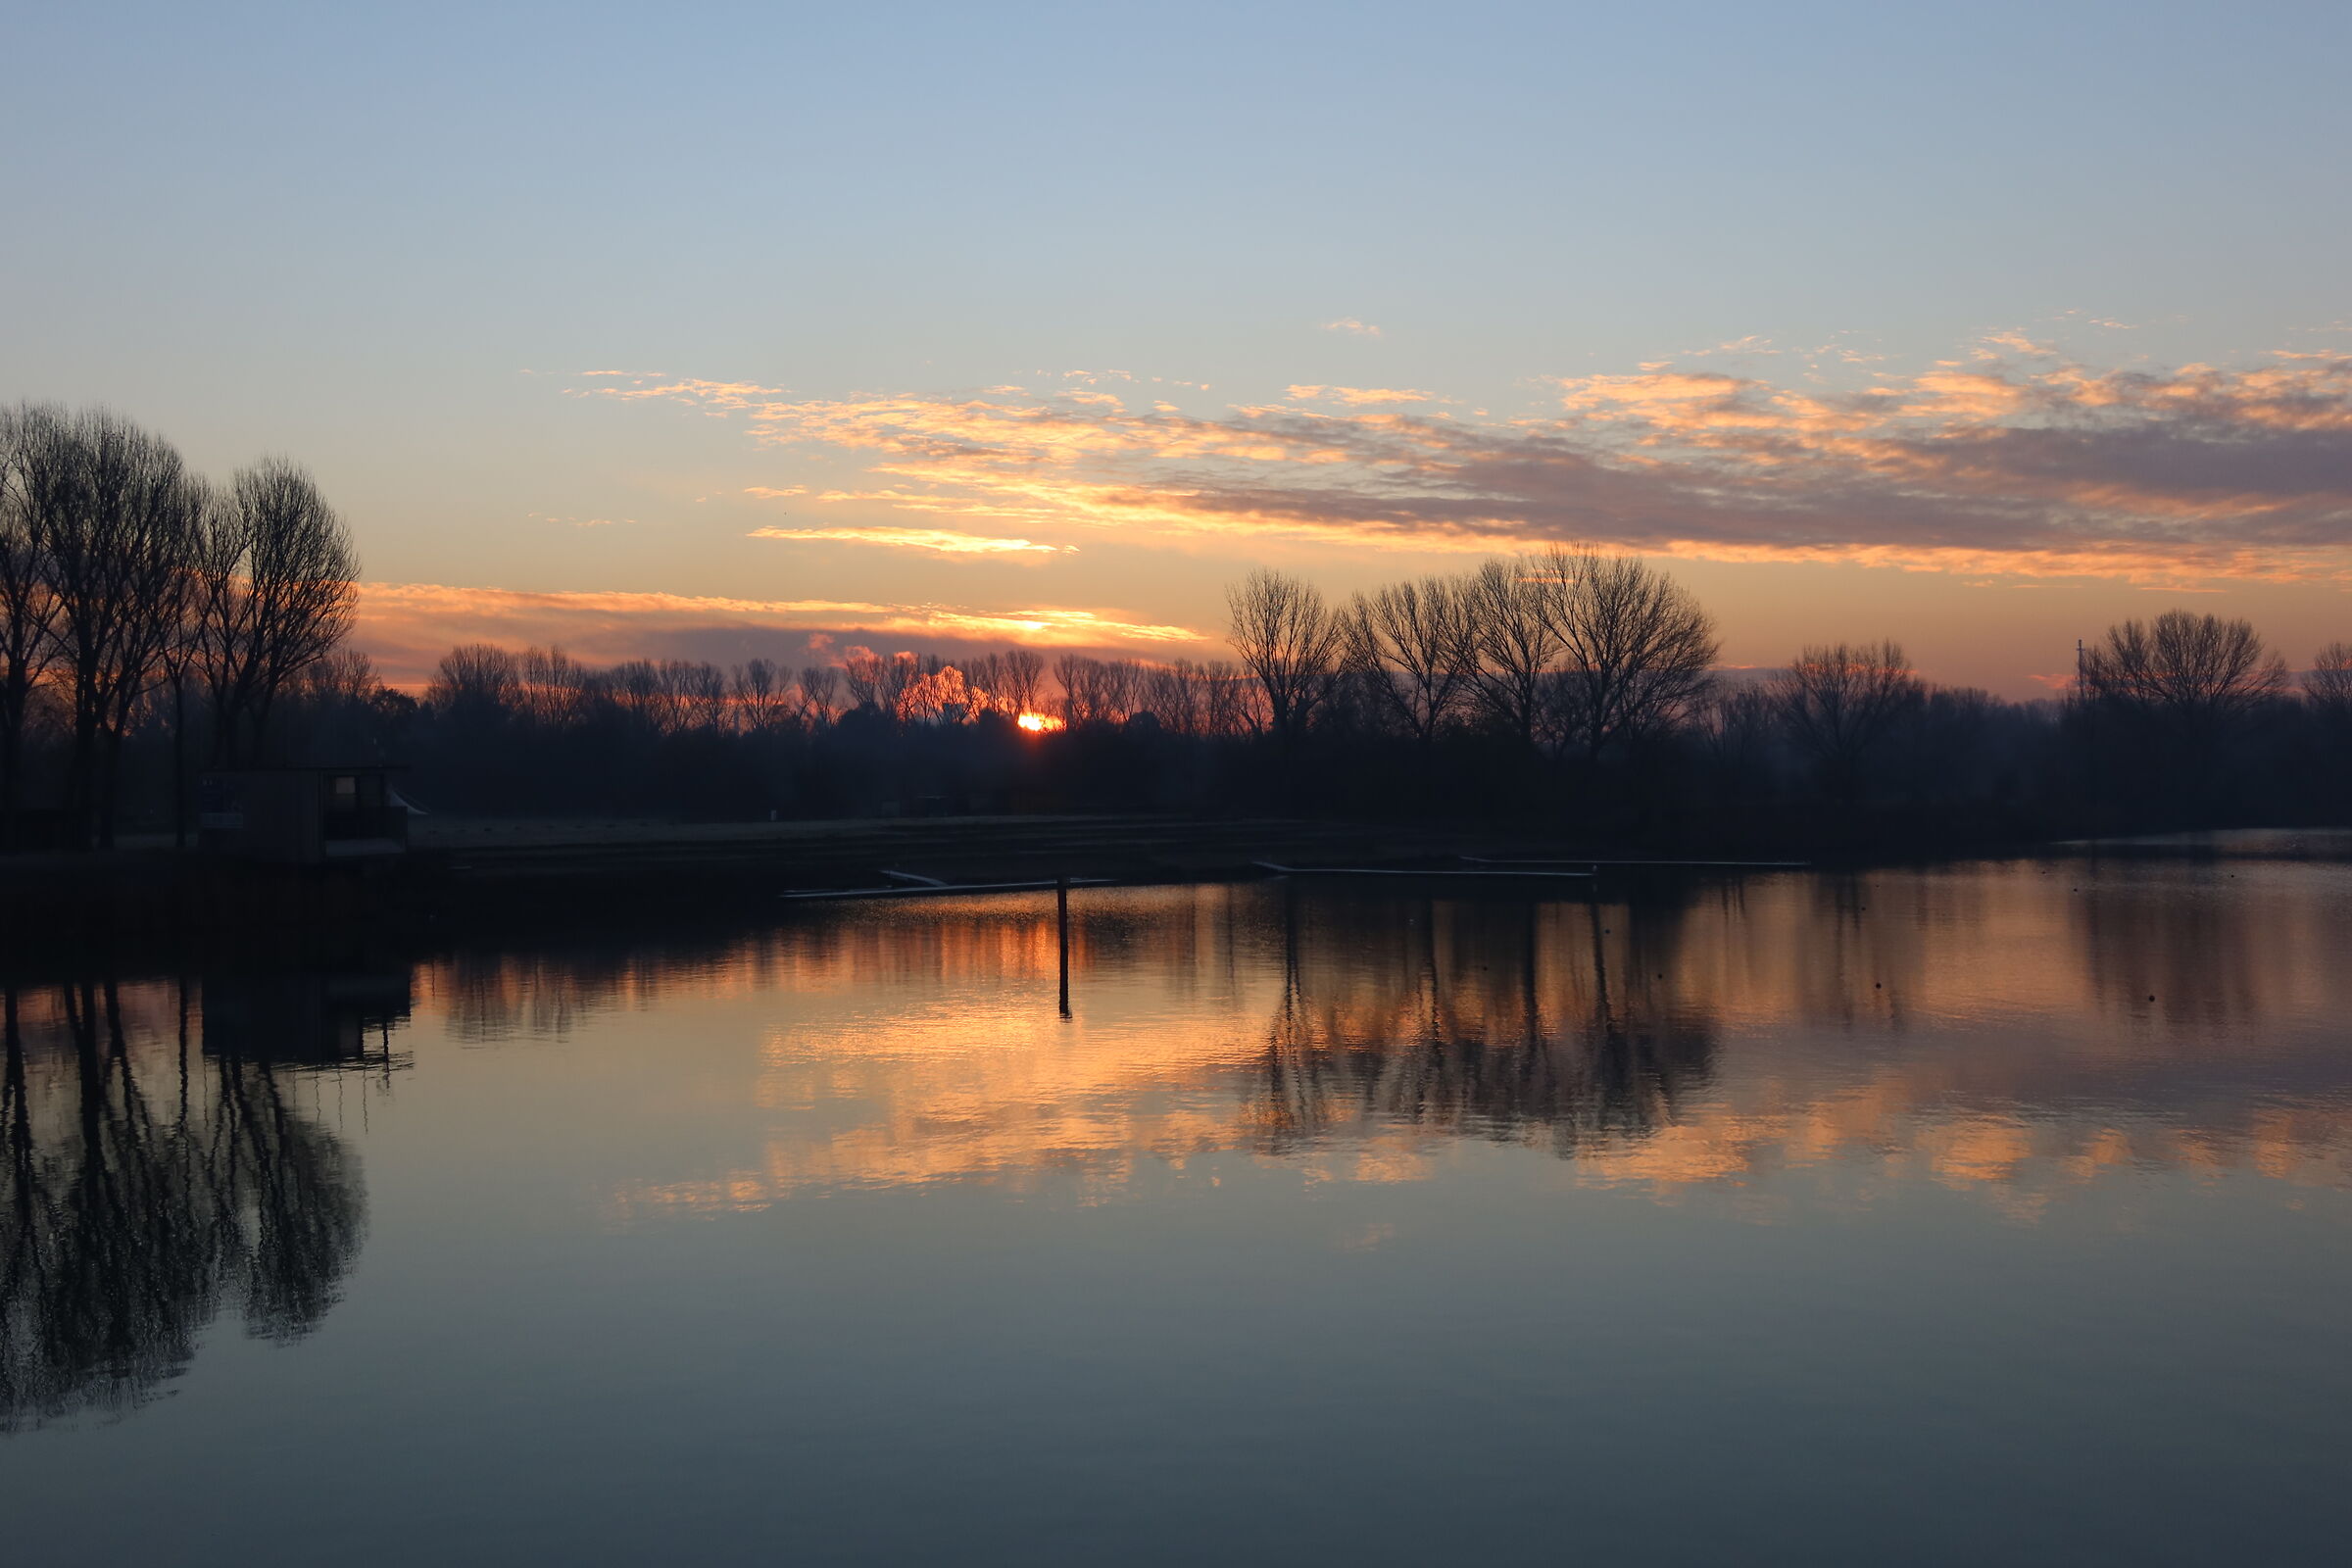 sunrise on lake mantua 7-12-21 - POV walk...